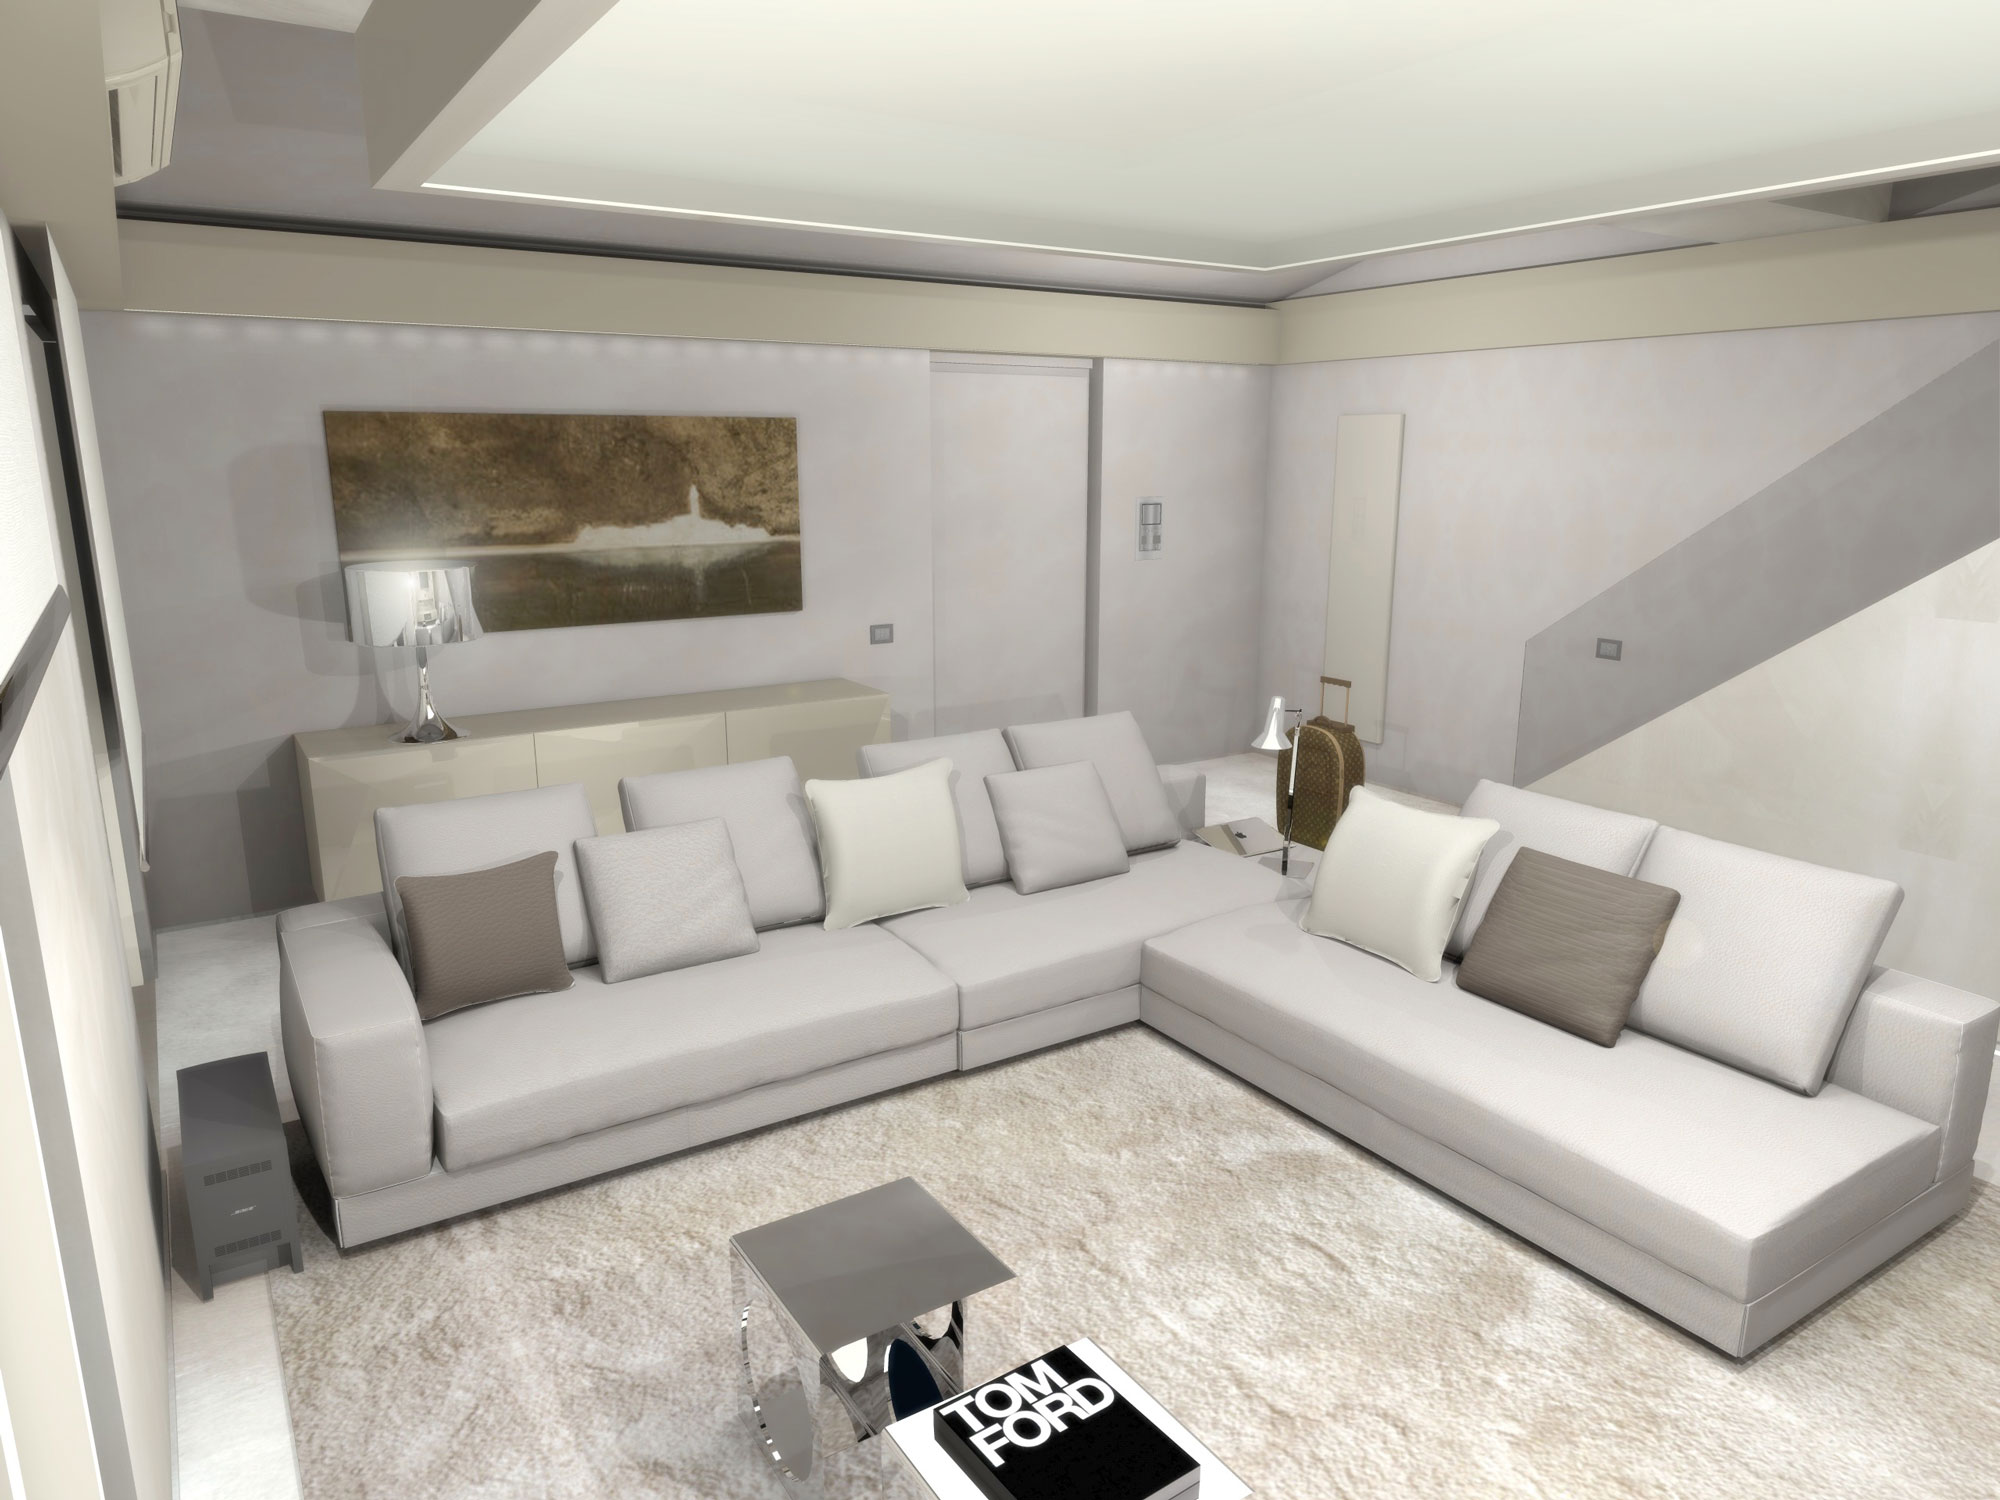 Private Residence in terni - Interior Design - Marco Bonfigli Architect